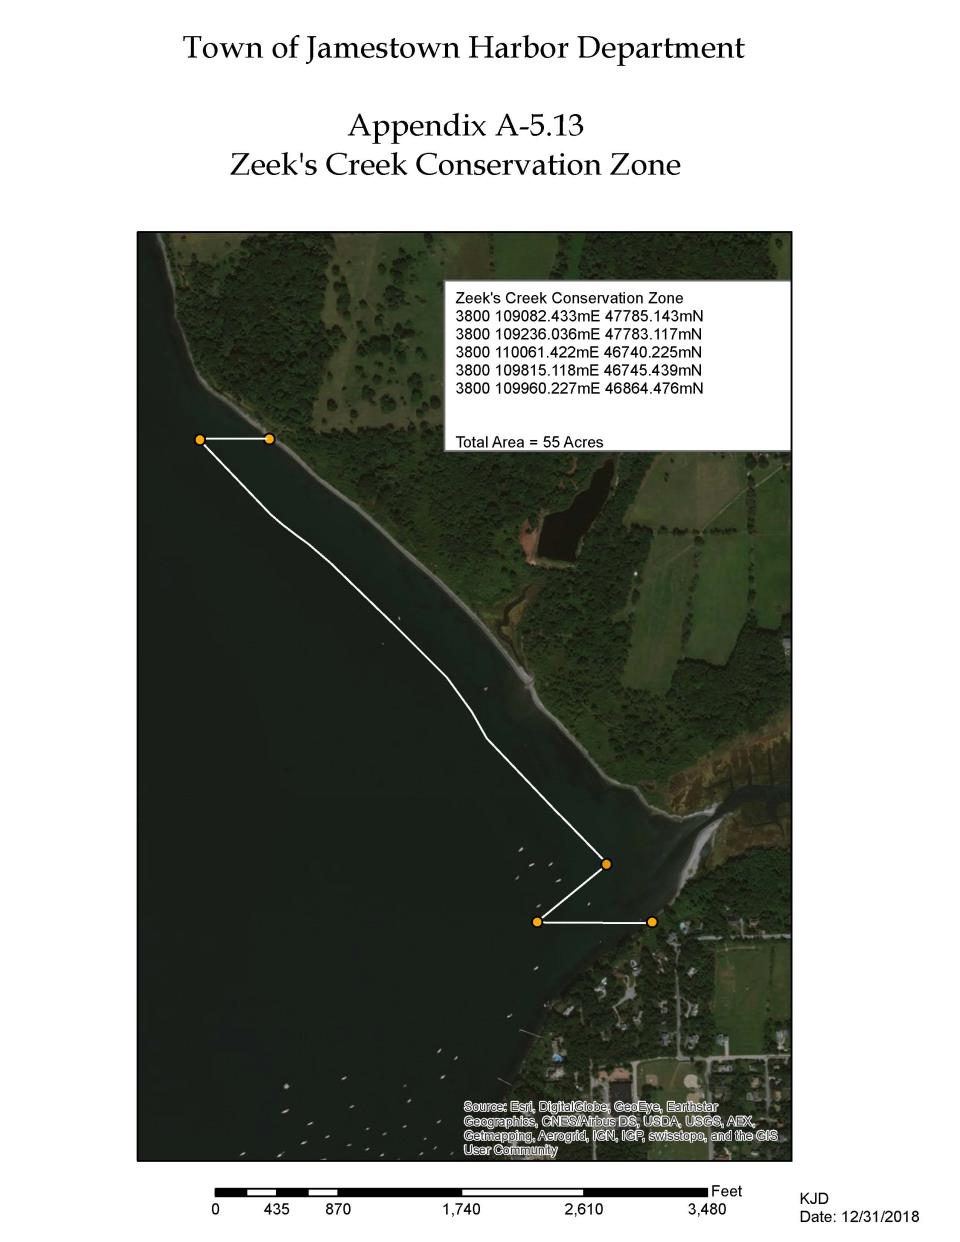 Zeek's Creek Conservation Zone